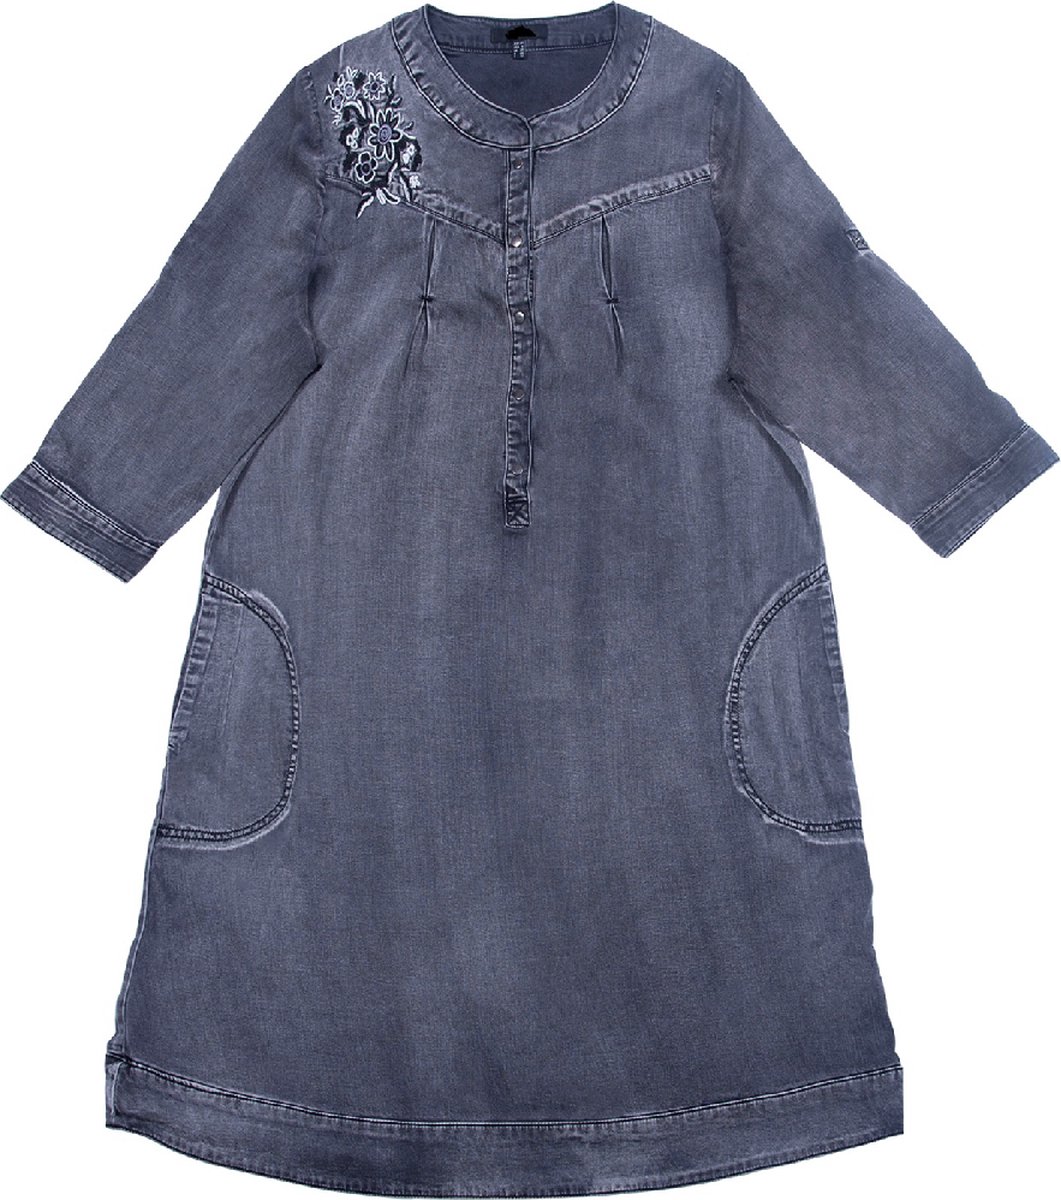 Floraweg dames lyocell jeans knop sluiting jurk met bloem borduurwerk en aap wassen zwarte kleur